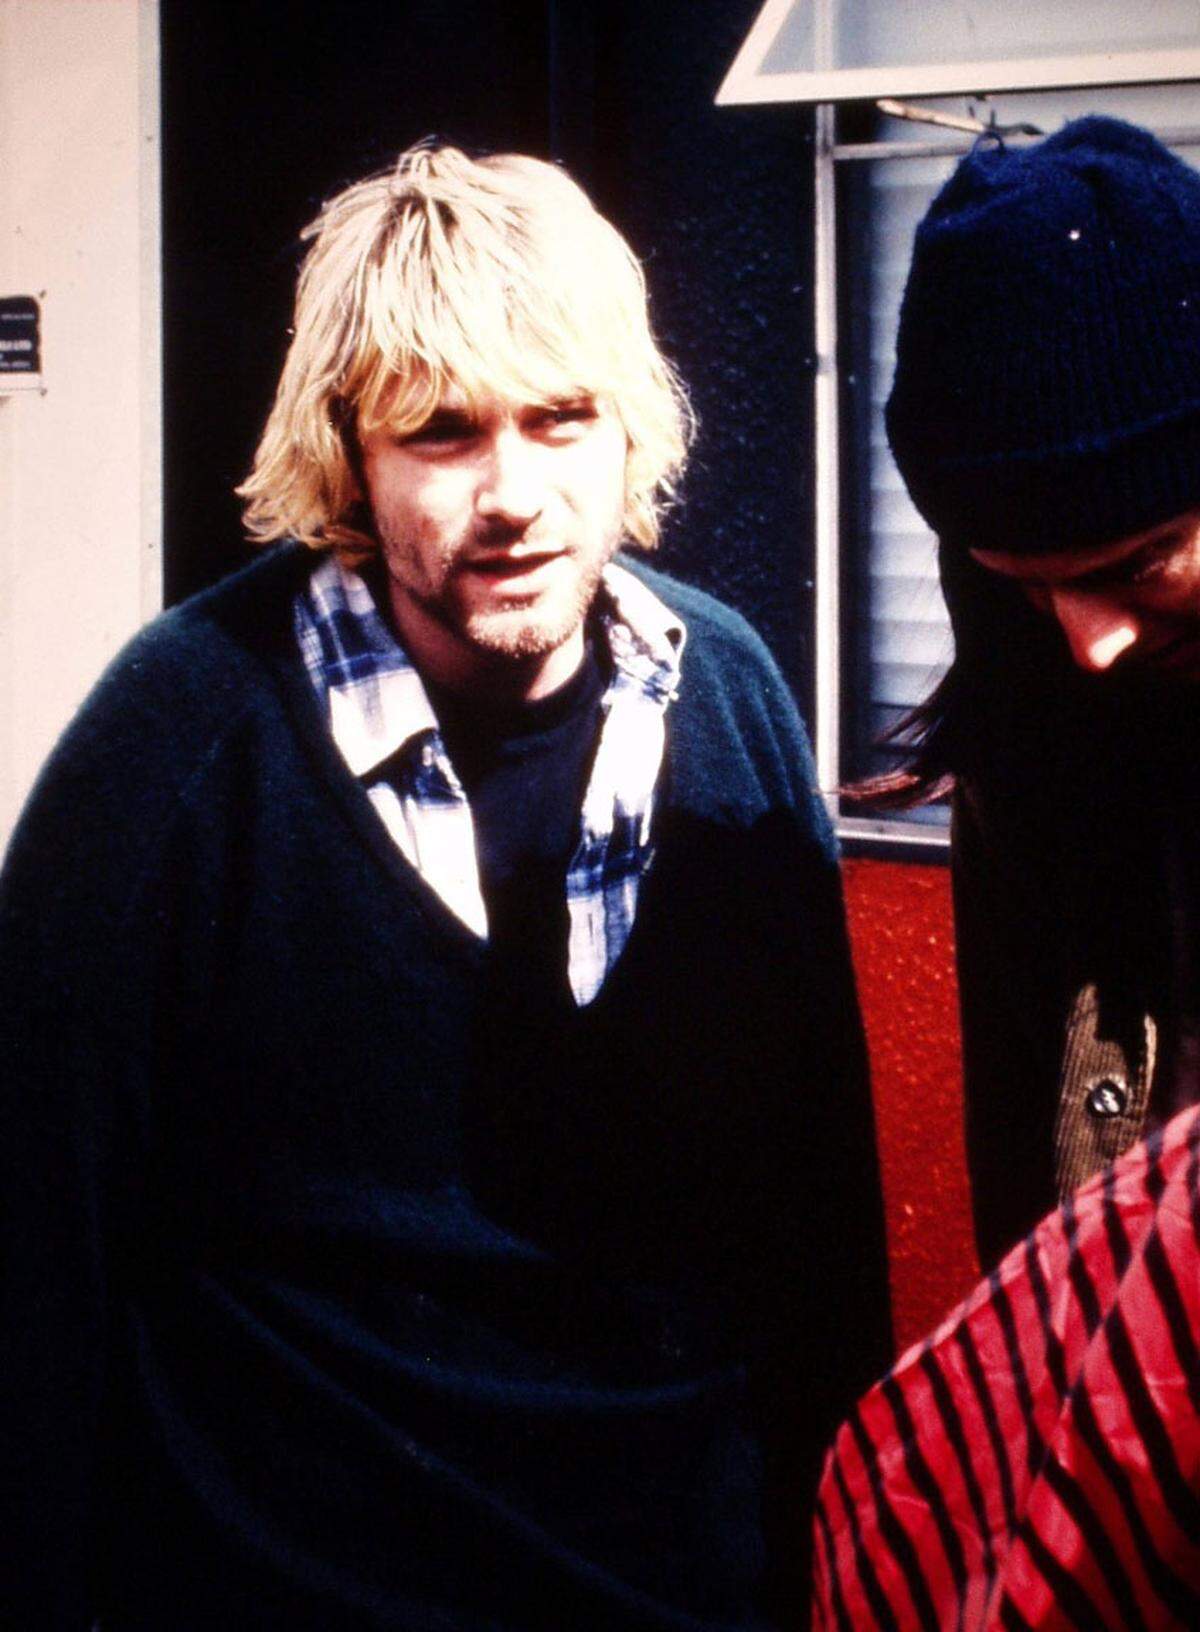 Geboren wurde Kurt Donald Cobain am 20. Februar 1967 in Aberdeen im US-Bundesstaat Washington. Als er acht Jahre alt war, ließen sich seine Eltern scheiden. Die Trennung hinterließ tiefe Spuren in Cobains Psyche - weil er hyperaktiv war, verschrieben ihm Ärzte Medikamente wie Ritalin.Mit 14 schenkte ein Onkel Kurt Cobain eine Gitarre. Im Jahr darauf lernte er Krist Novoselic kennen, der später Bassist von Nirvana werden sollte - beeinflusst von Bands aus der Gegend wie den Melvins.